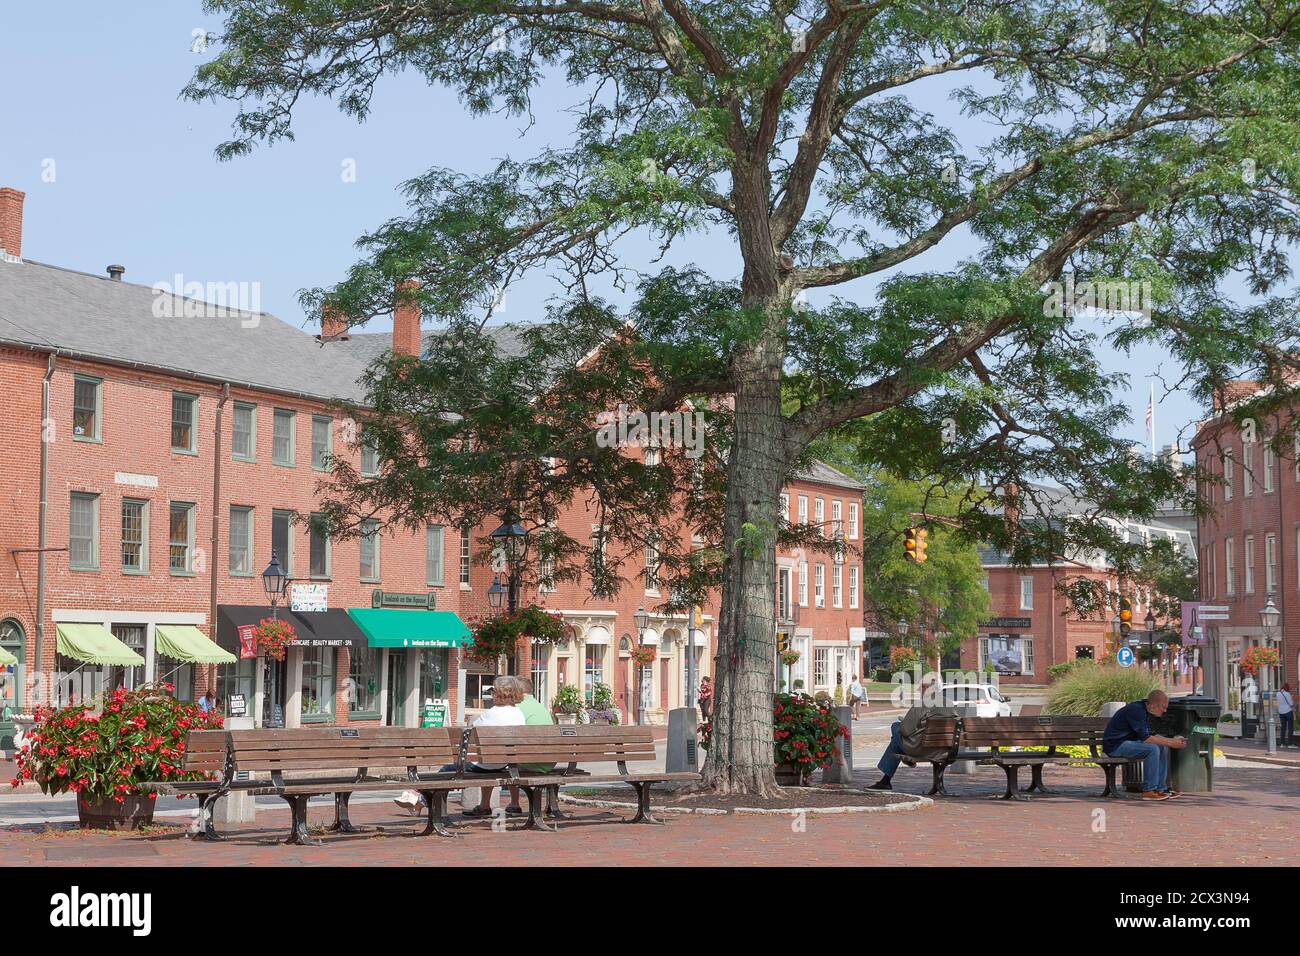 Market Square, quartier historique du centre-ville, à Newburyport, Massachusetts. La plus grande pièce de l'architecture de l'époque Fédéraliste aux États-Unis. Banque D'Images